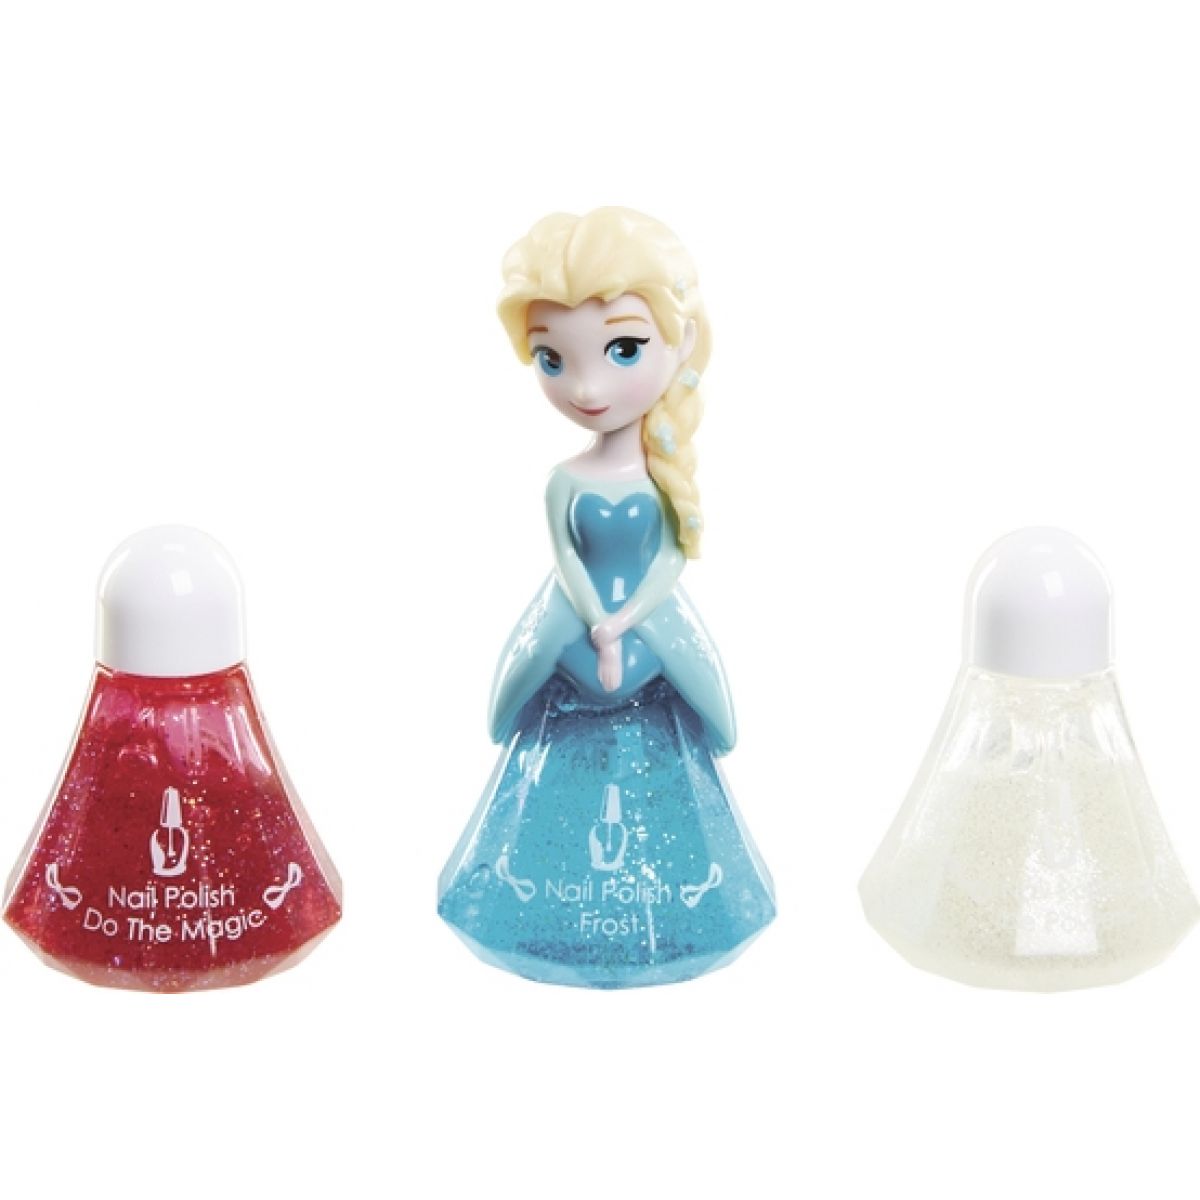 Disney Frozen Little Kingdom Make up pro princezny - Elsa modrá a laky na nehty